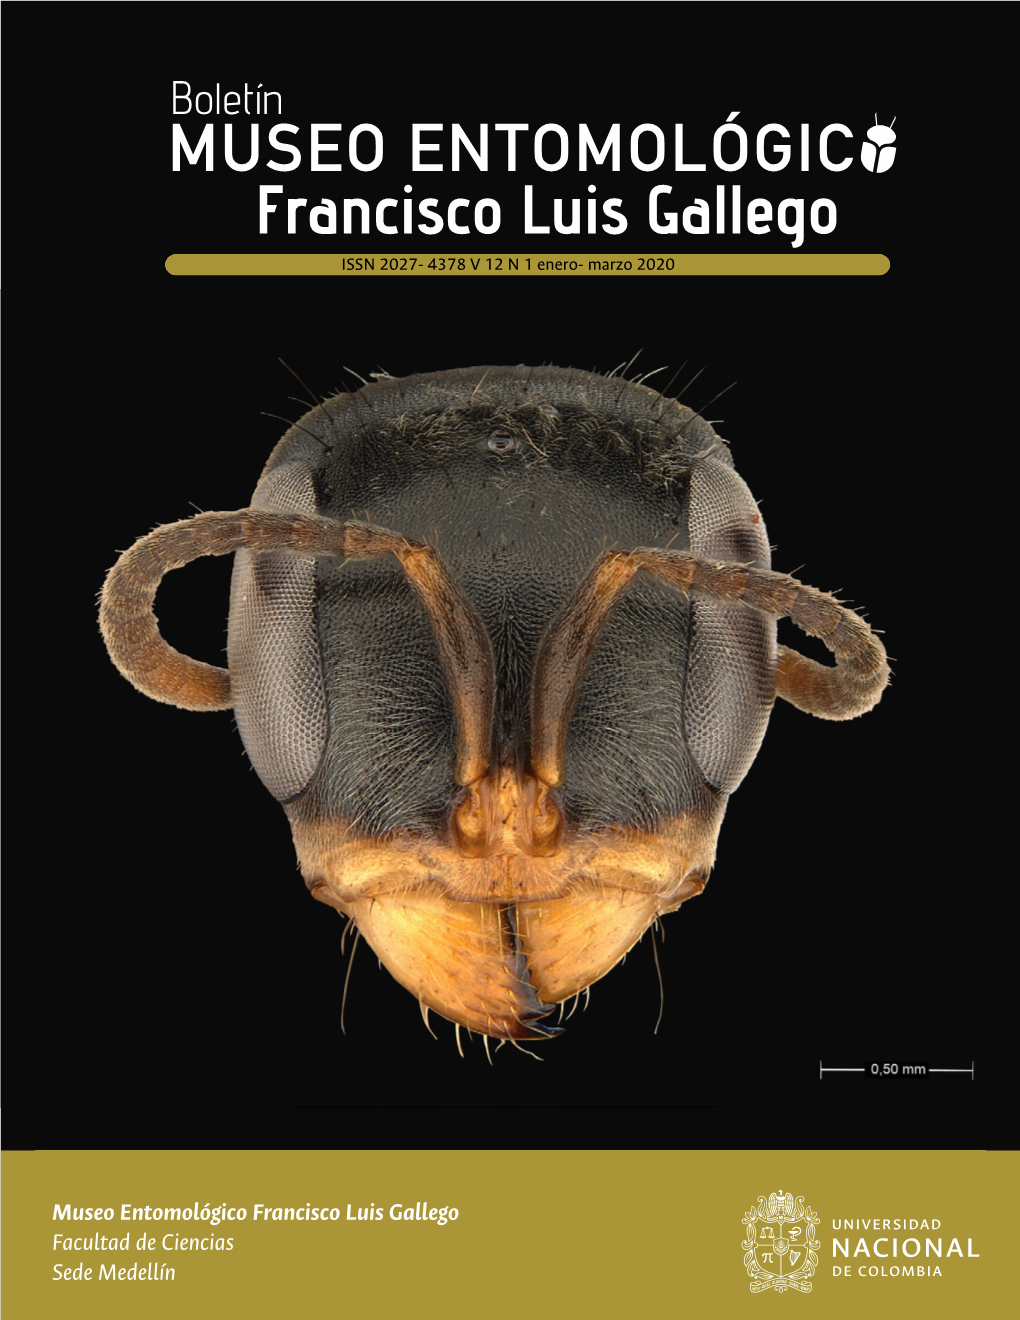 Del Museo Entomológico Francisco Luis Gallego Bol.Mus.Entomol.Francisco Luis Gallego